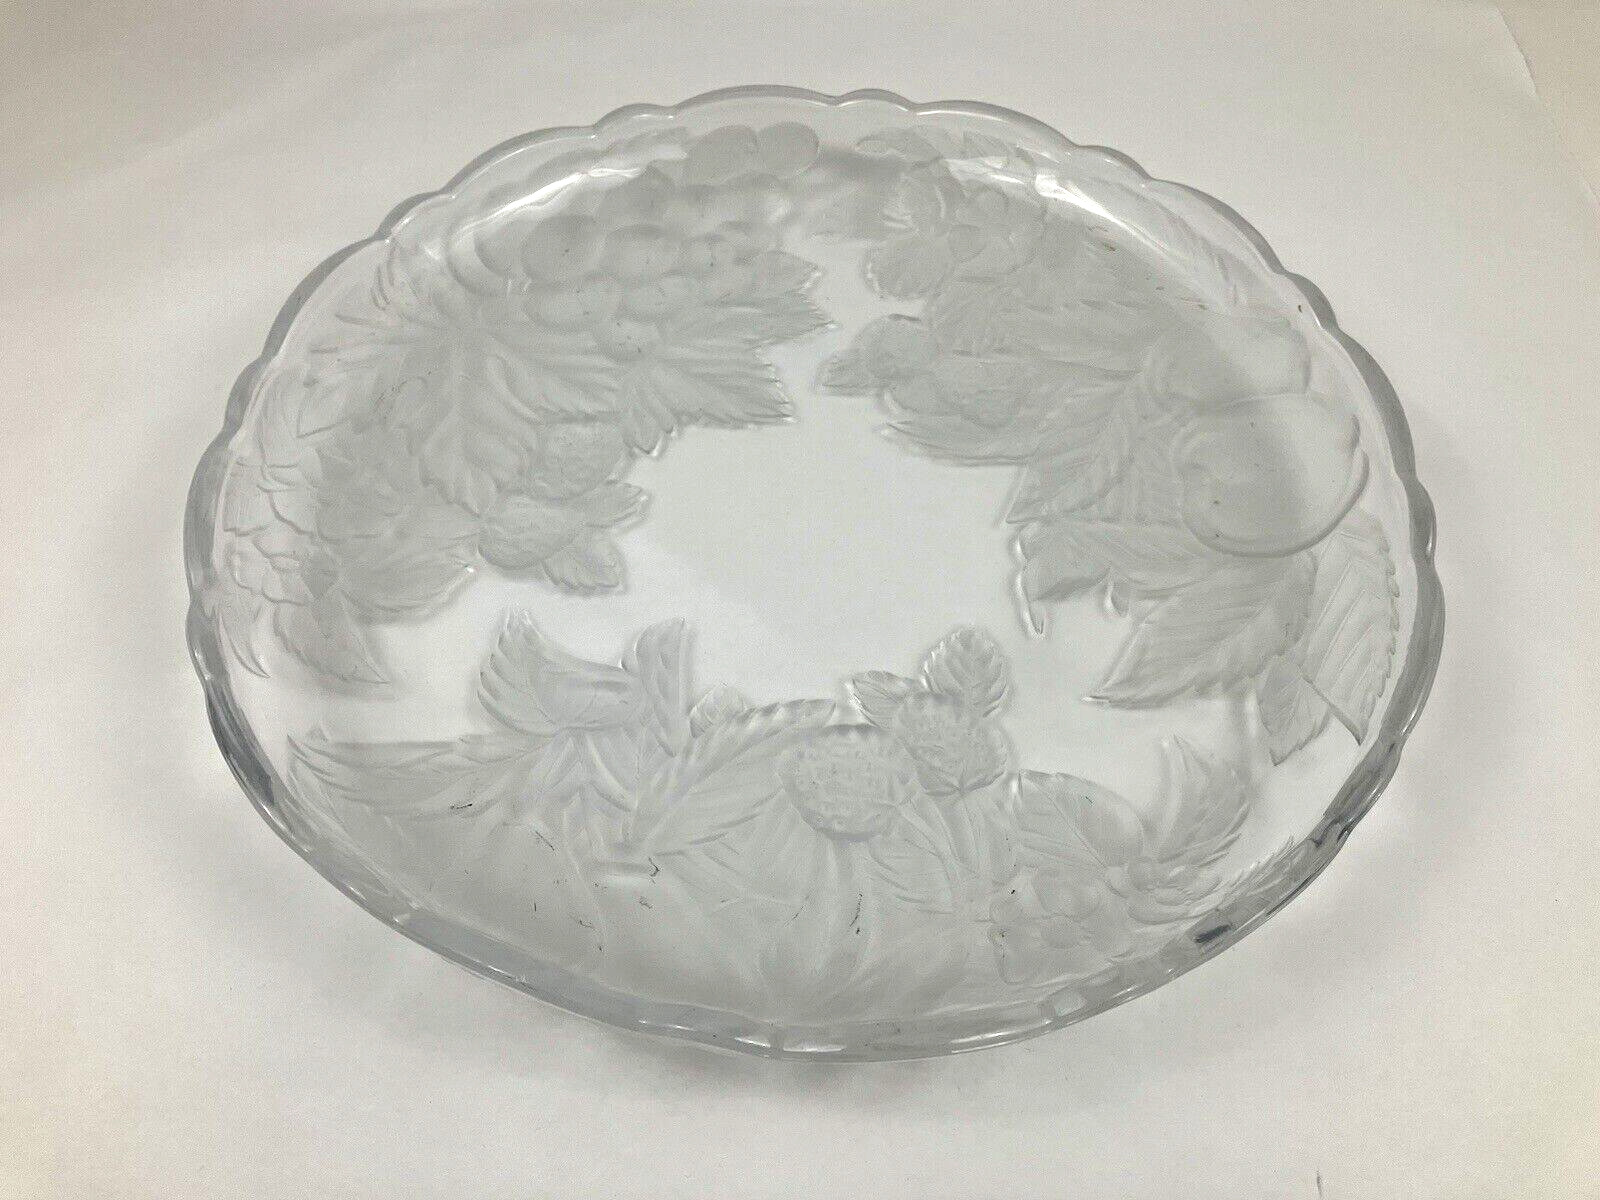 Vintage Large Frosted Glass Serving Platter Dish Scalloped Edges Fruit design